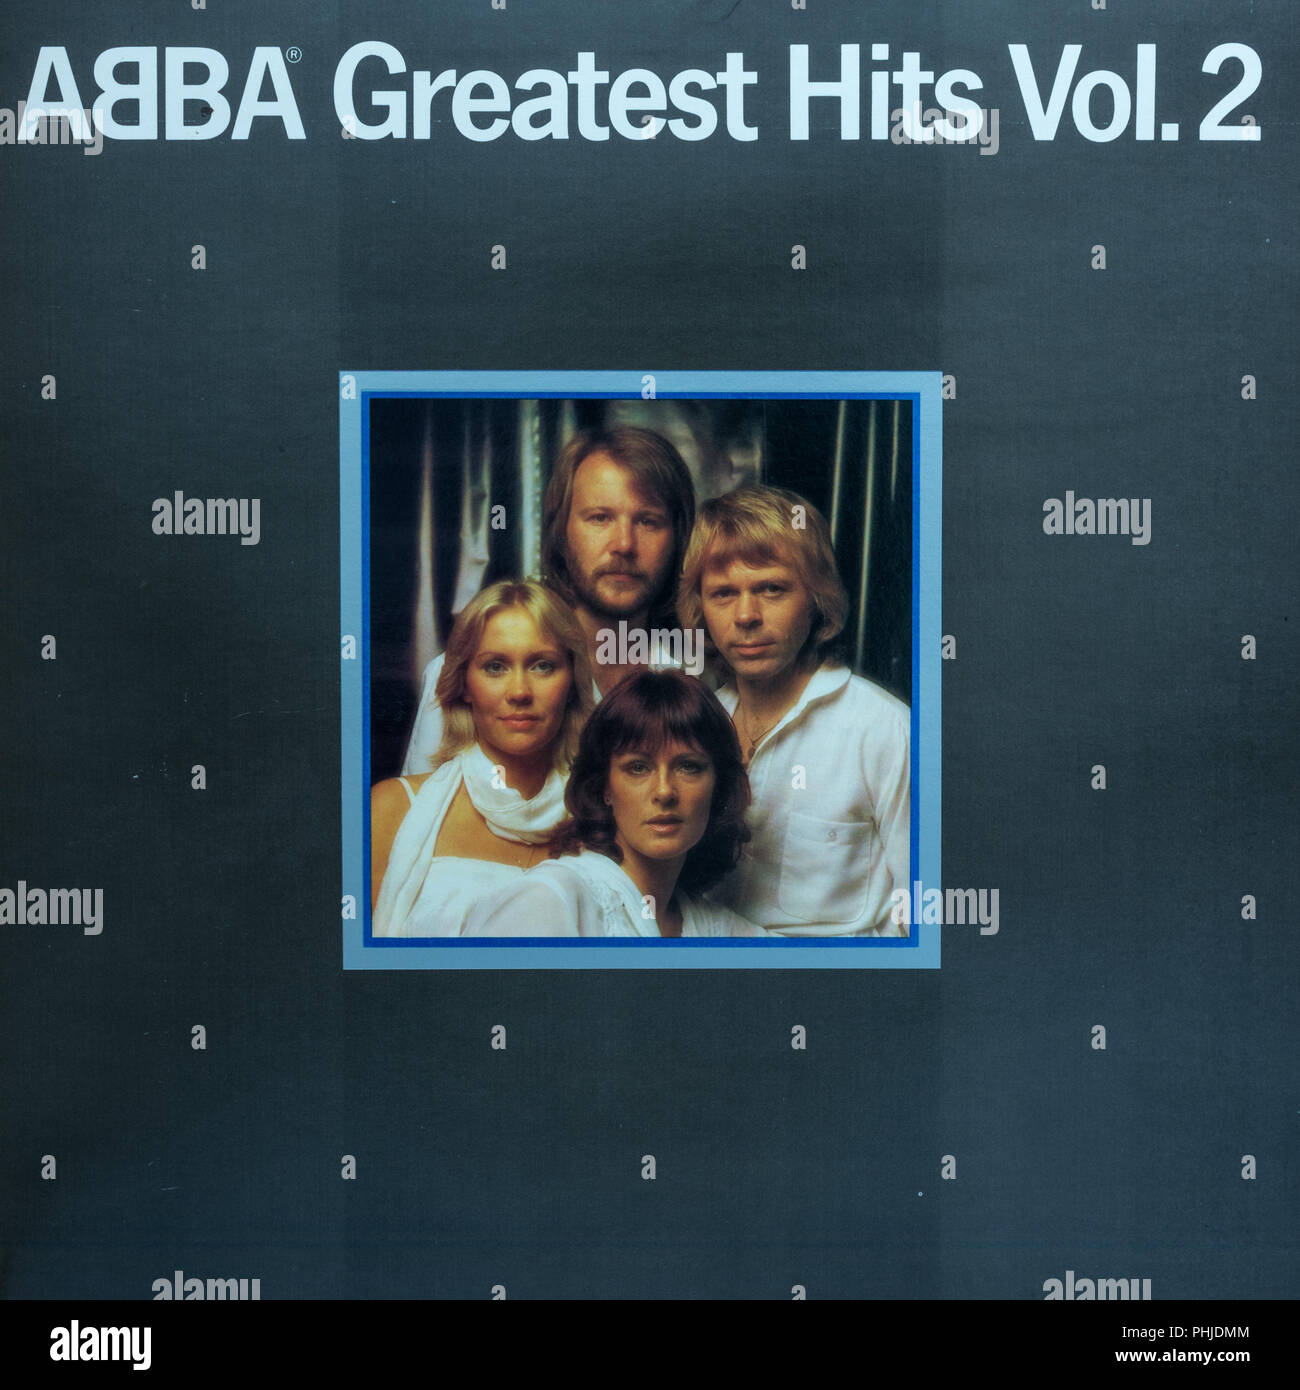 Abba Greatest Hits Vol. 2 album cover Stock Photo